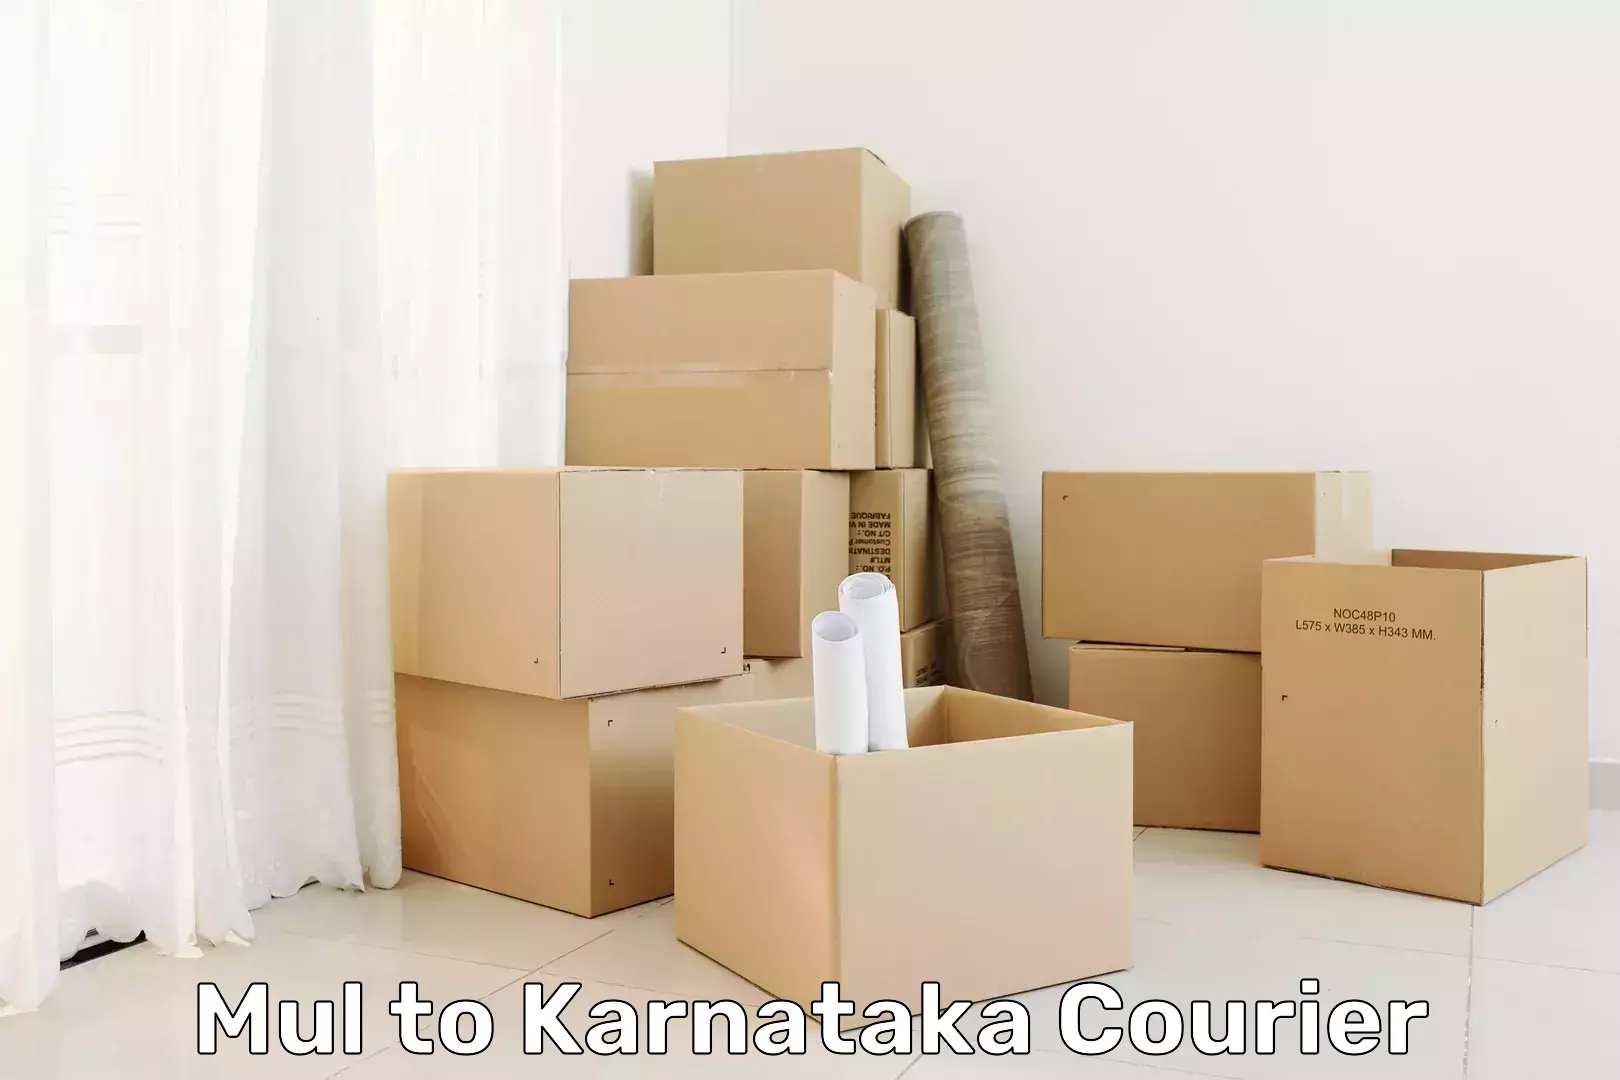 Automated shipping processes Mul to Kanjarakatte